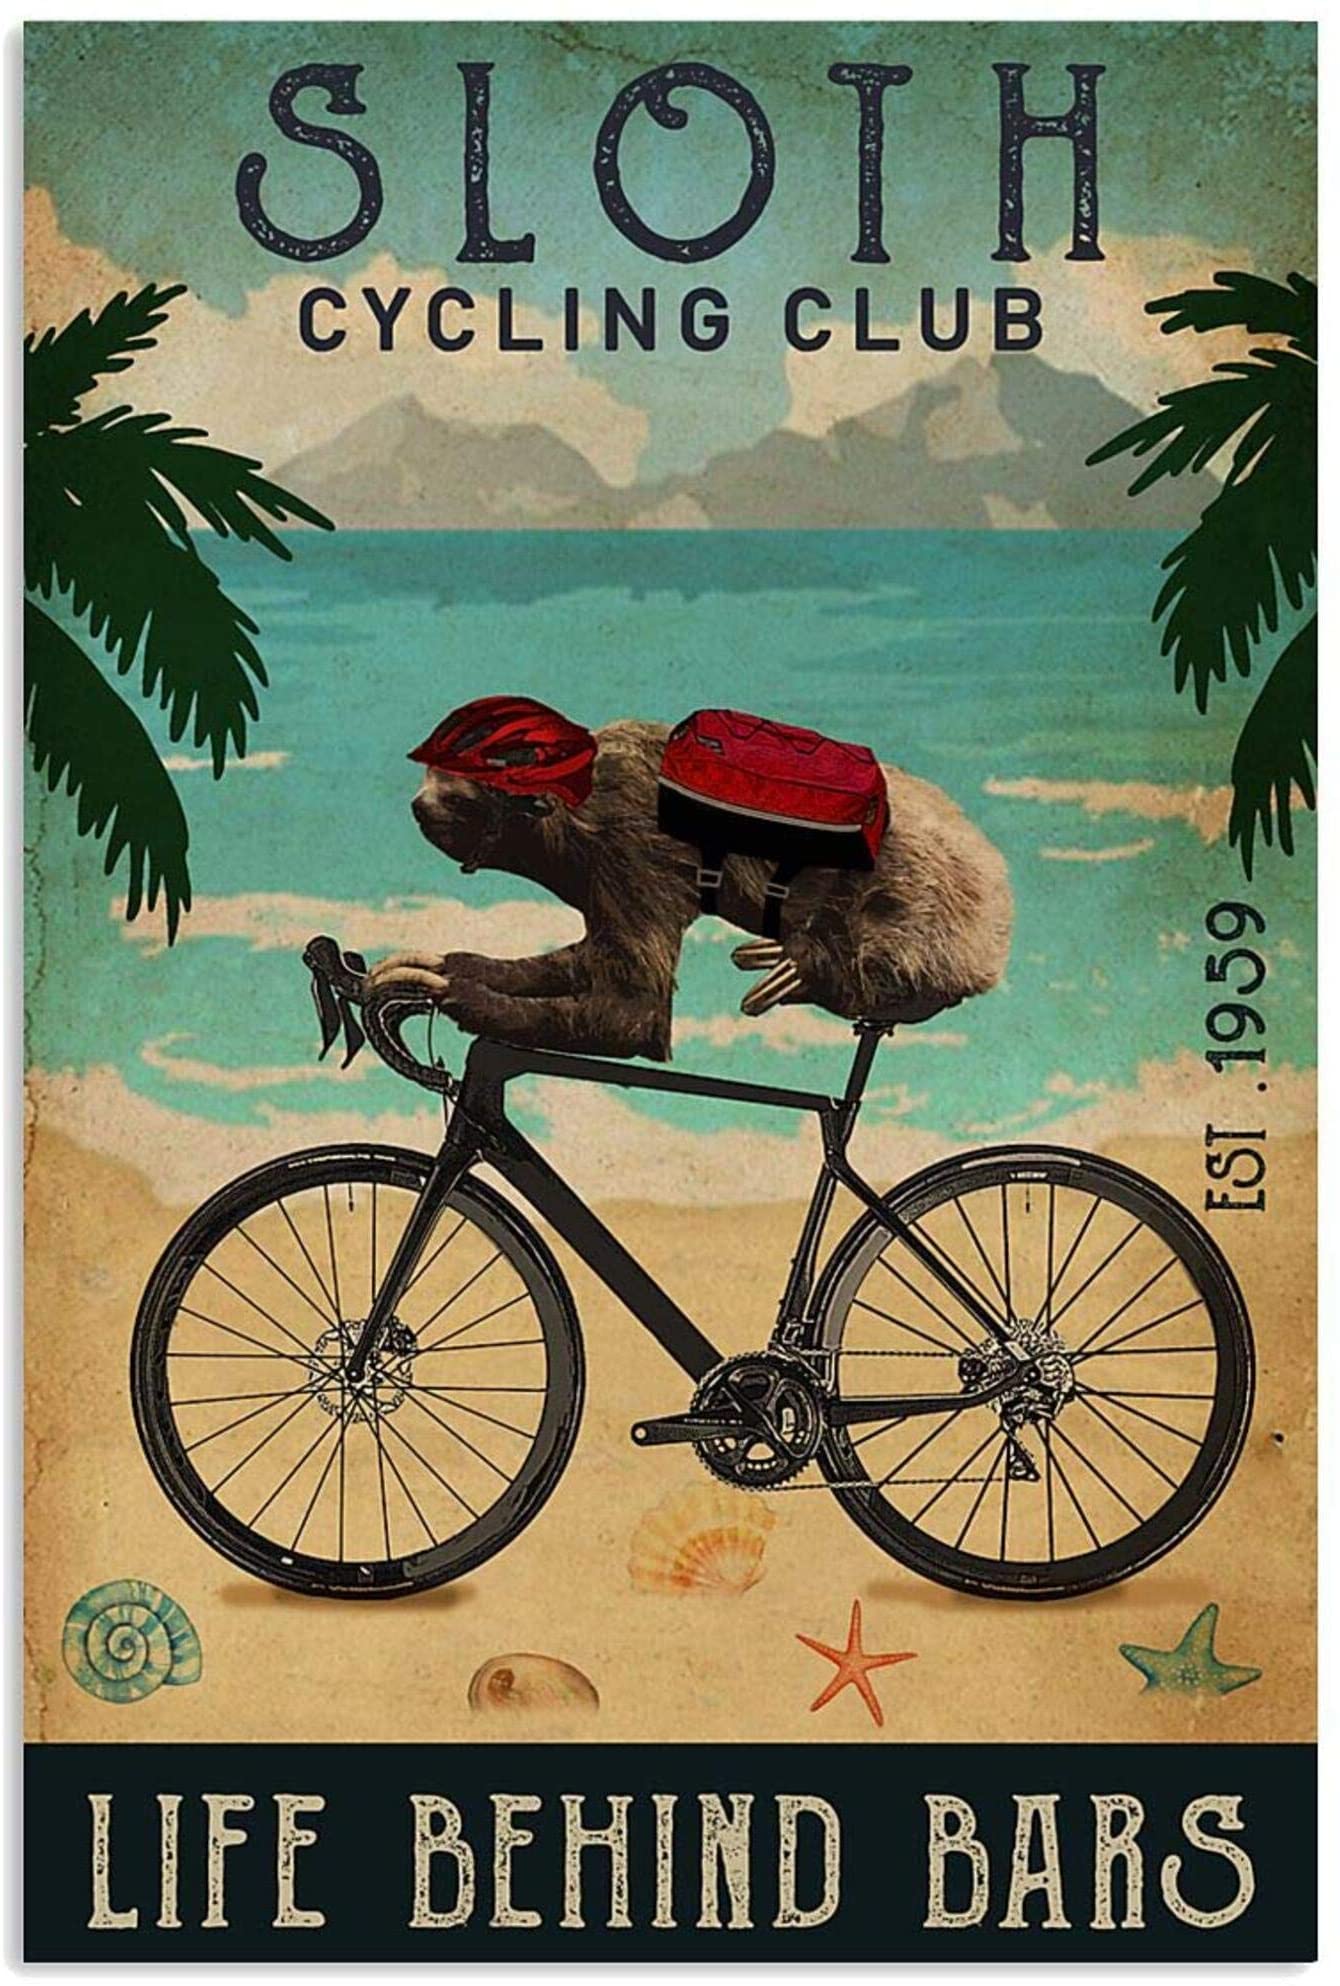 Cycling Club Sloth